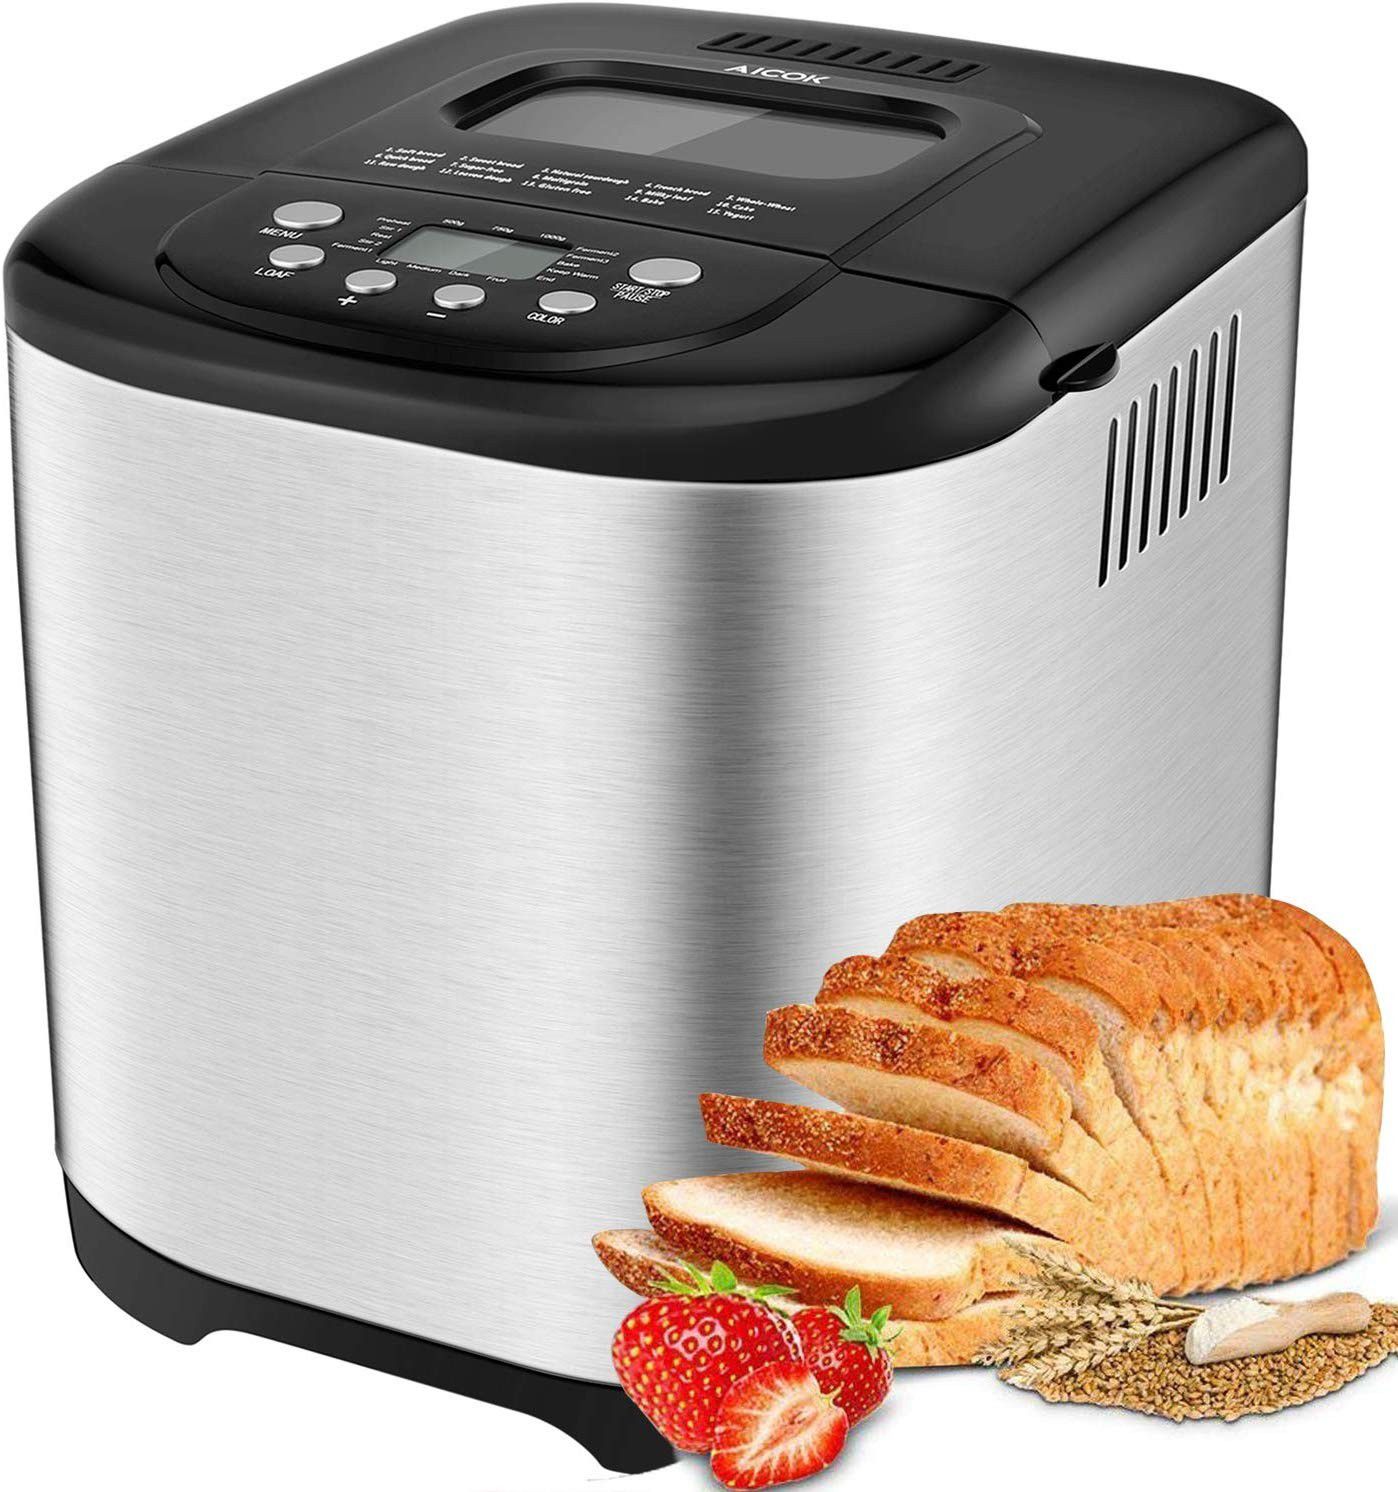 Aicok 2 LB Bread Maker, 15 Programs Bread Machine Including Gluten-Free Setting